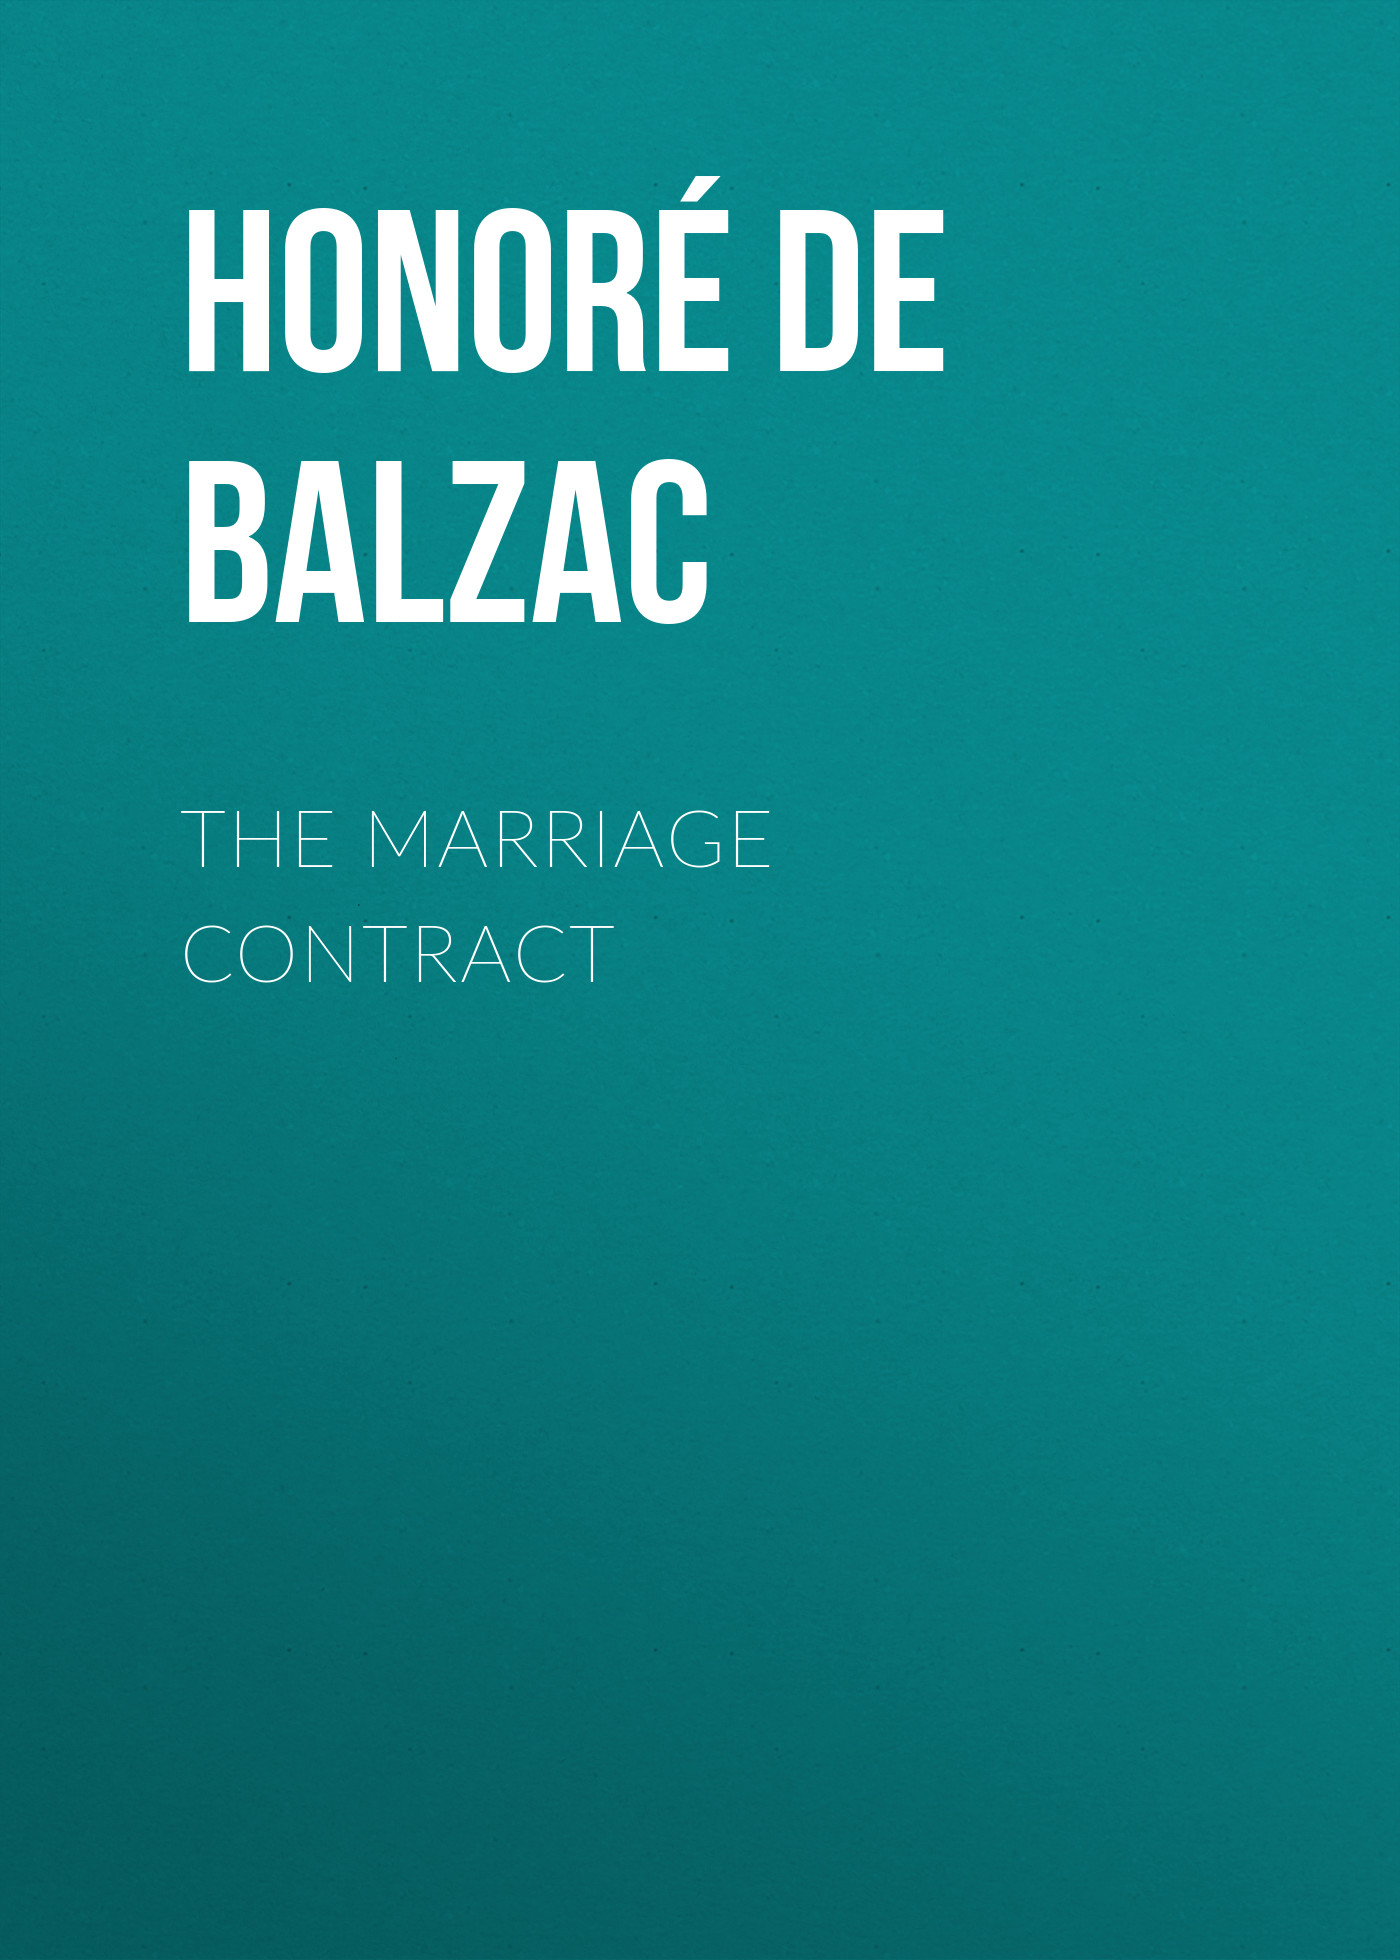 Книга The Marriage Contract из серии , созданная Honoré Balzac, может относится к жанру Литература 19 века, Зарубежная старинная литература, Зарубежная классика. Стоимость электронной книги The Marriage Contract с идентификатором 25020363 составляет 0 руб.